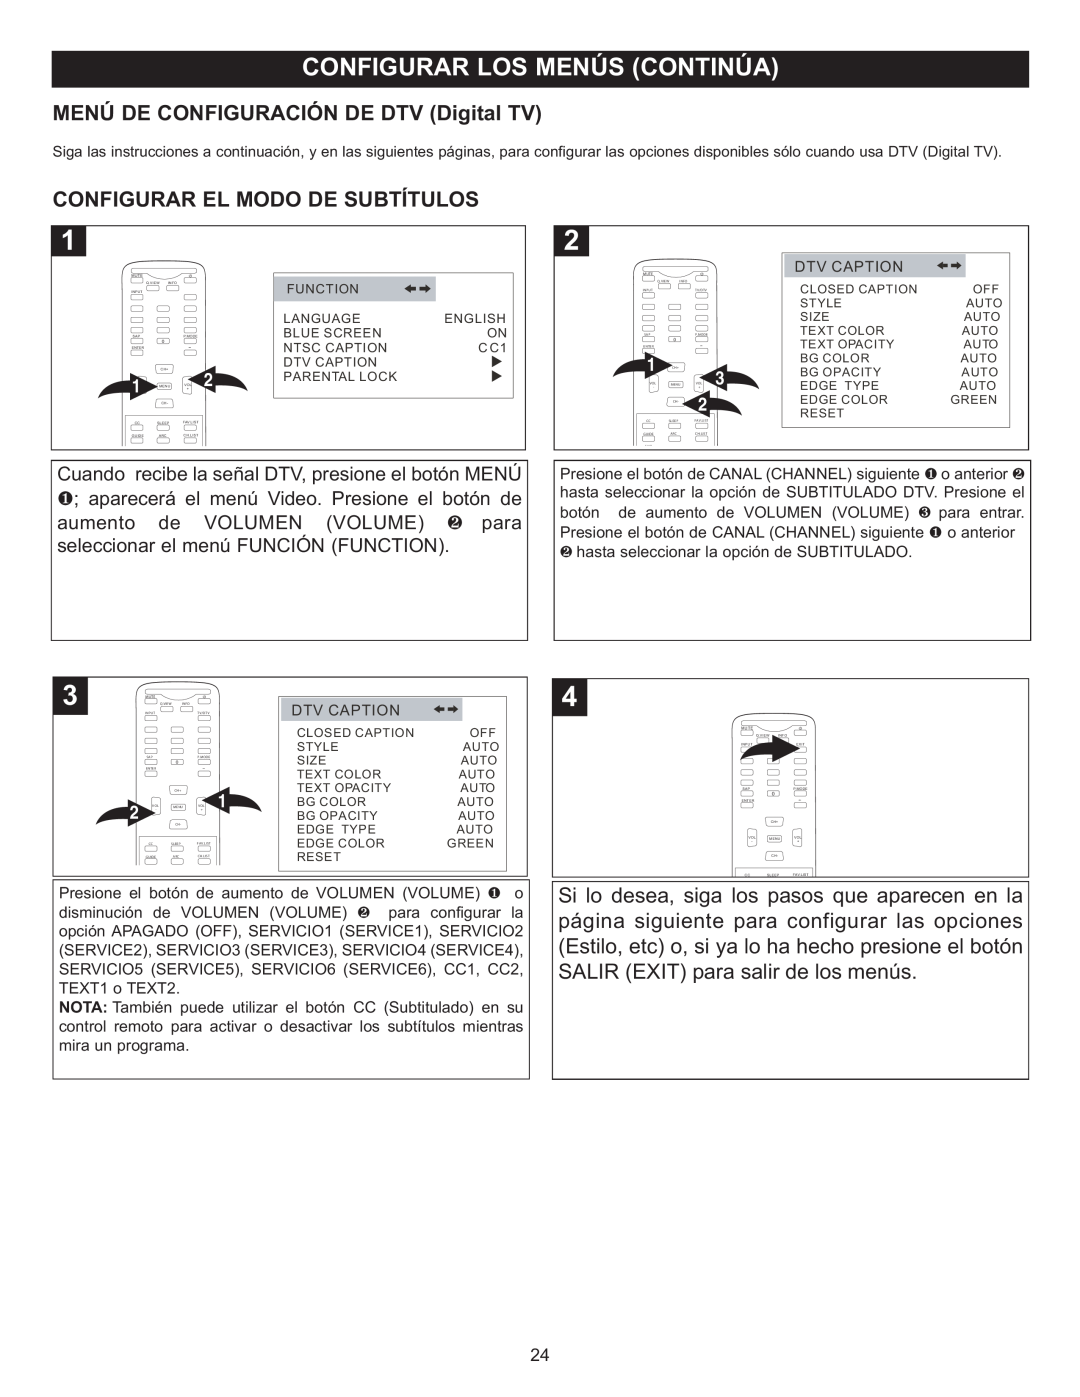 Memorex MT2028D-BLK manual MENÚ DE CONFIGURACIÓN DE DTV Digital TV, Configurar El Modo De Subtítulos 